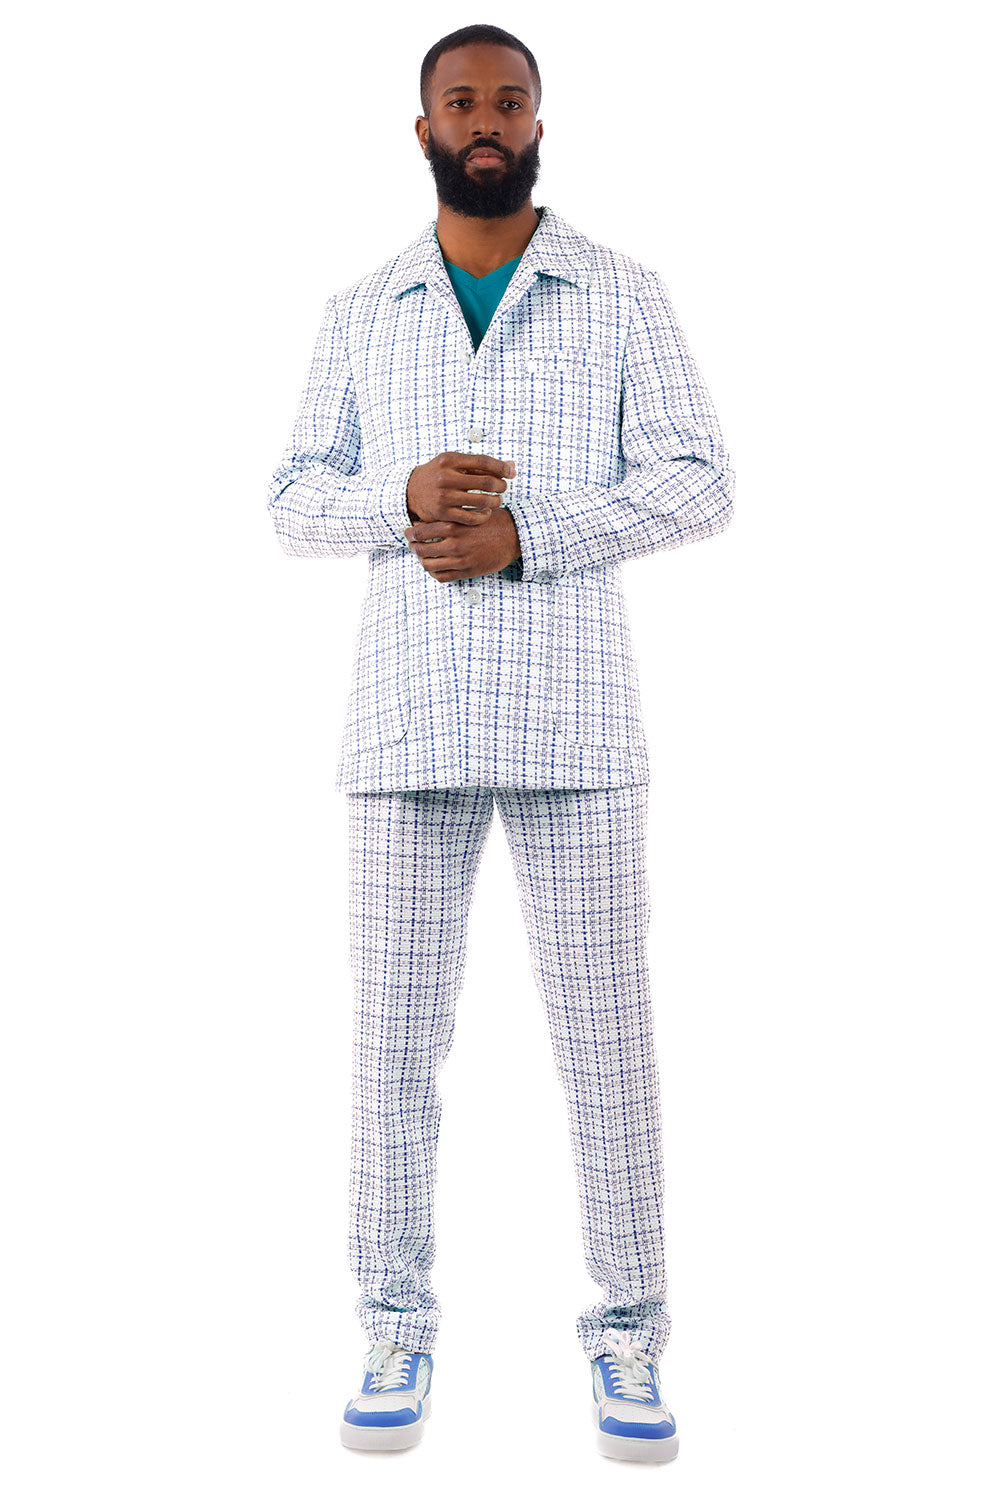 Barabas Men's Geometric Pattern Wool Collared Suit Set 4SU07 White Blue